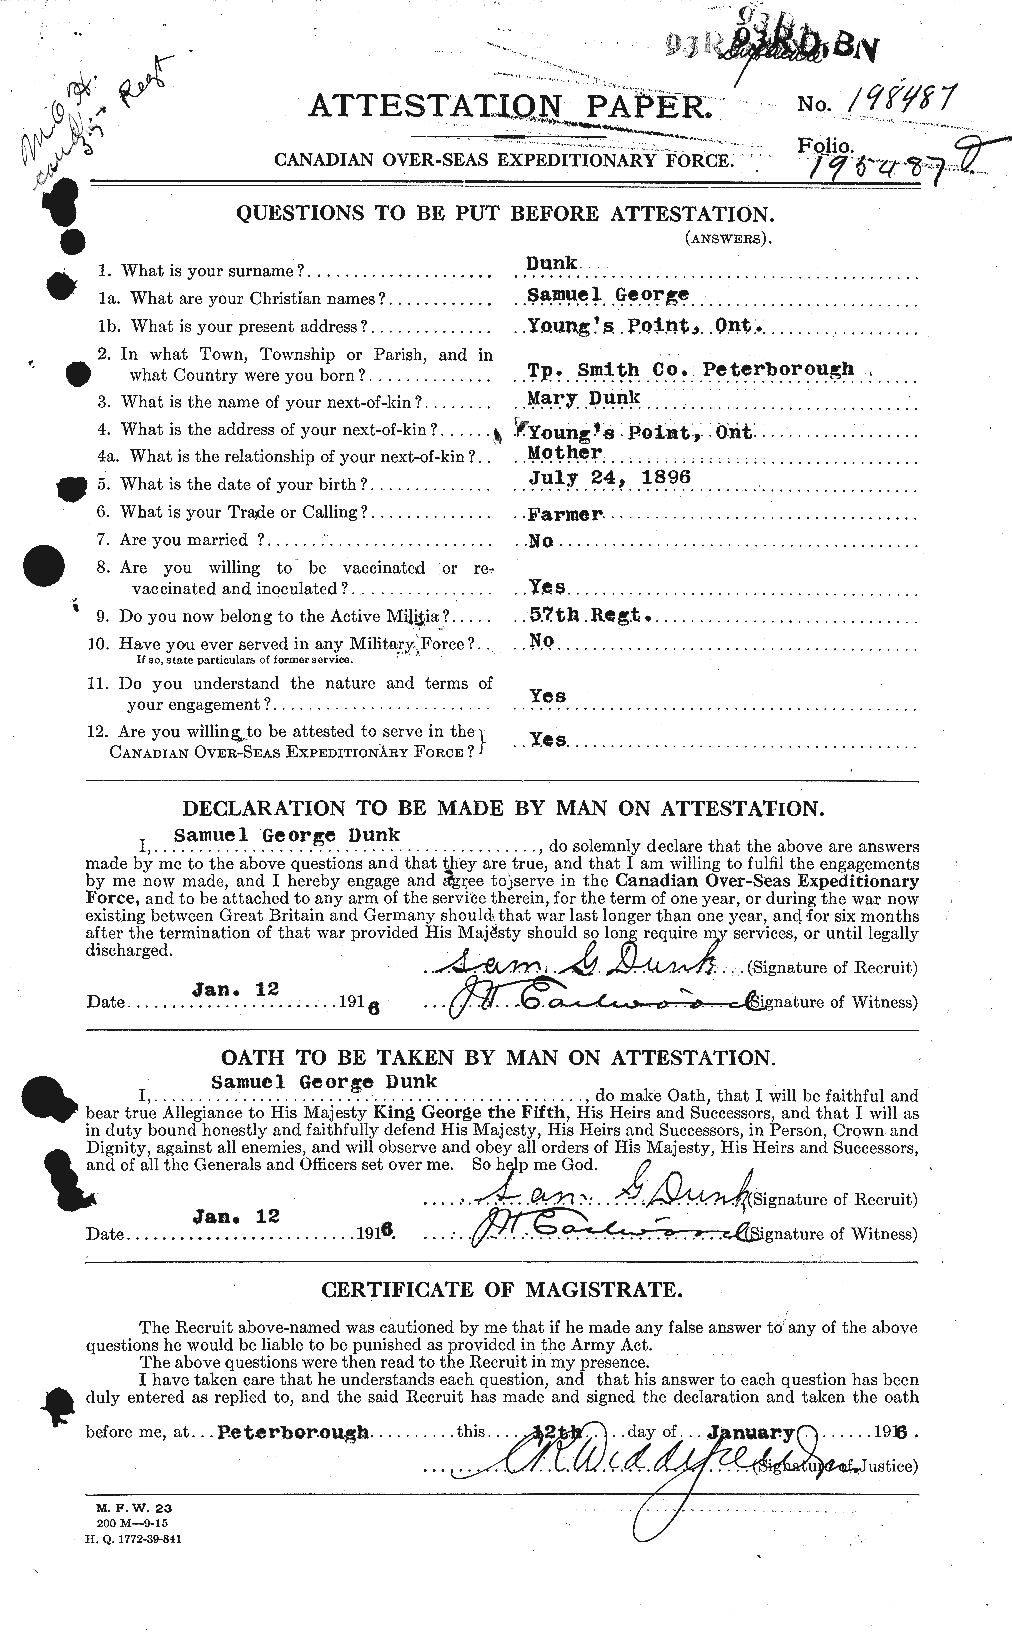 Dossiers du Personnel de la Première Guerre mondiale - CEC 302590a